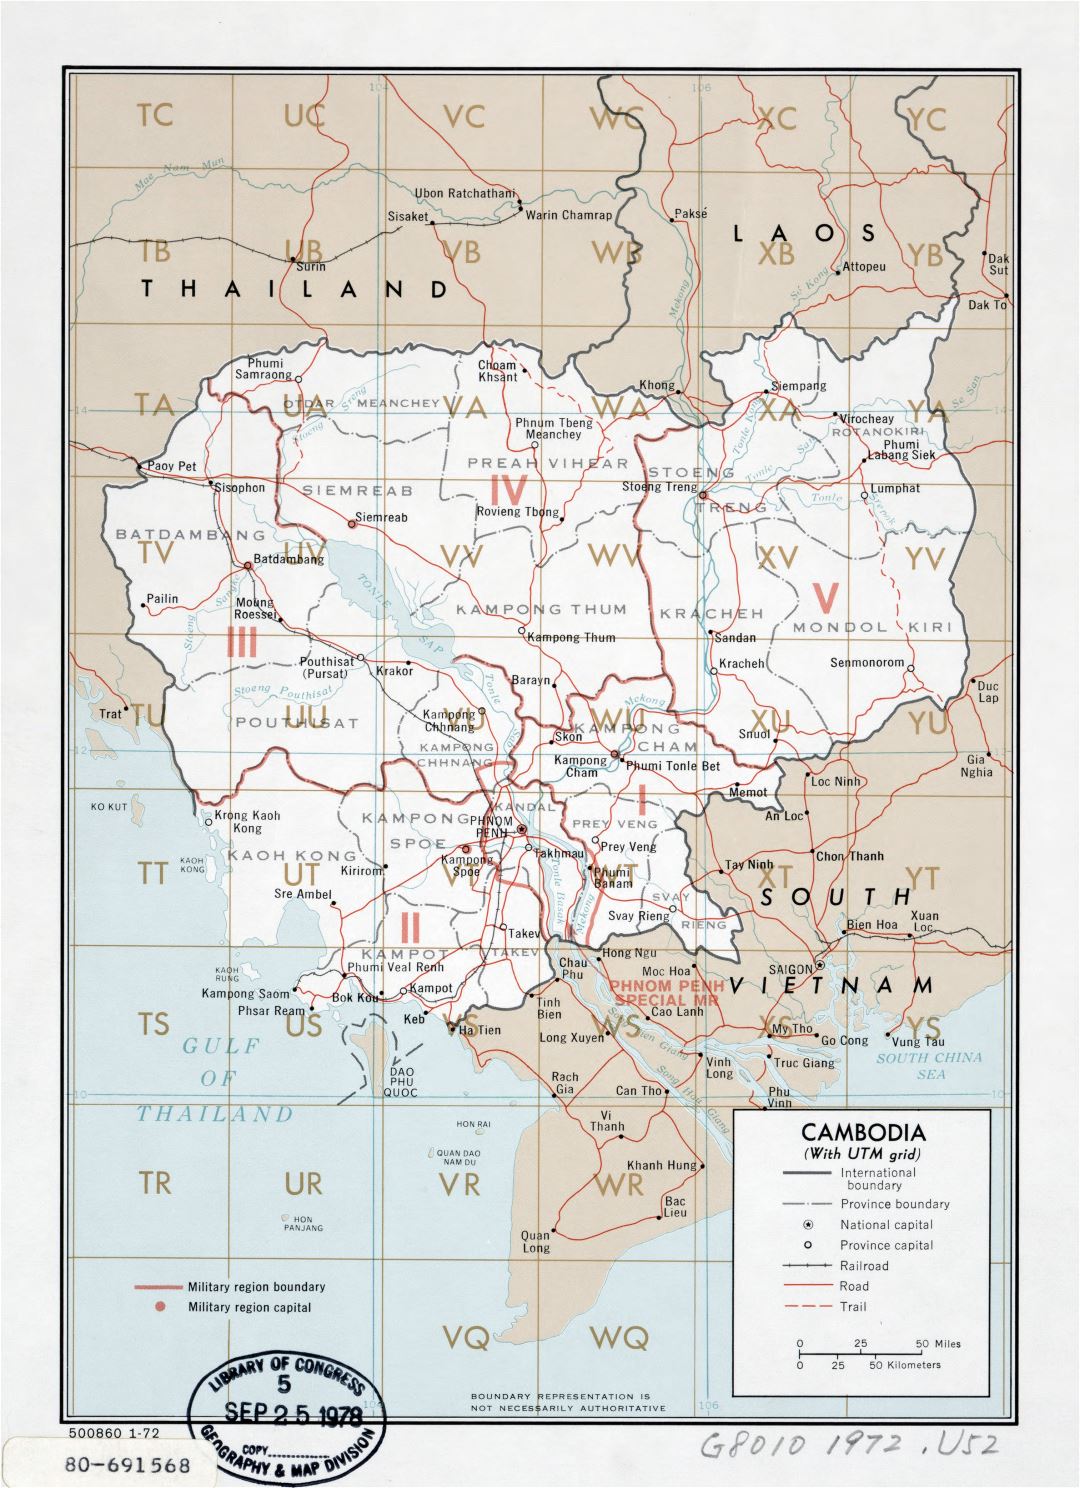 Grande detallado mapa de Camboya (con cuadrícula utm) - 1972